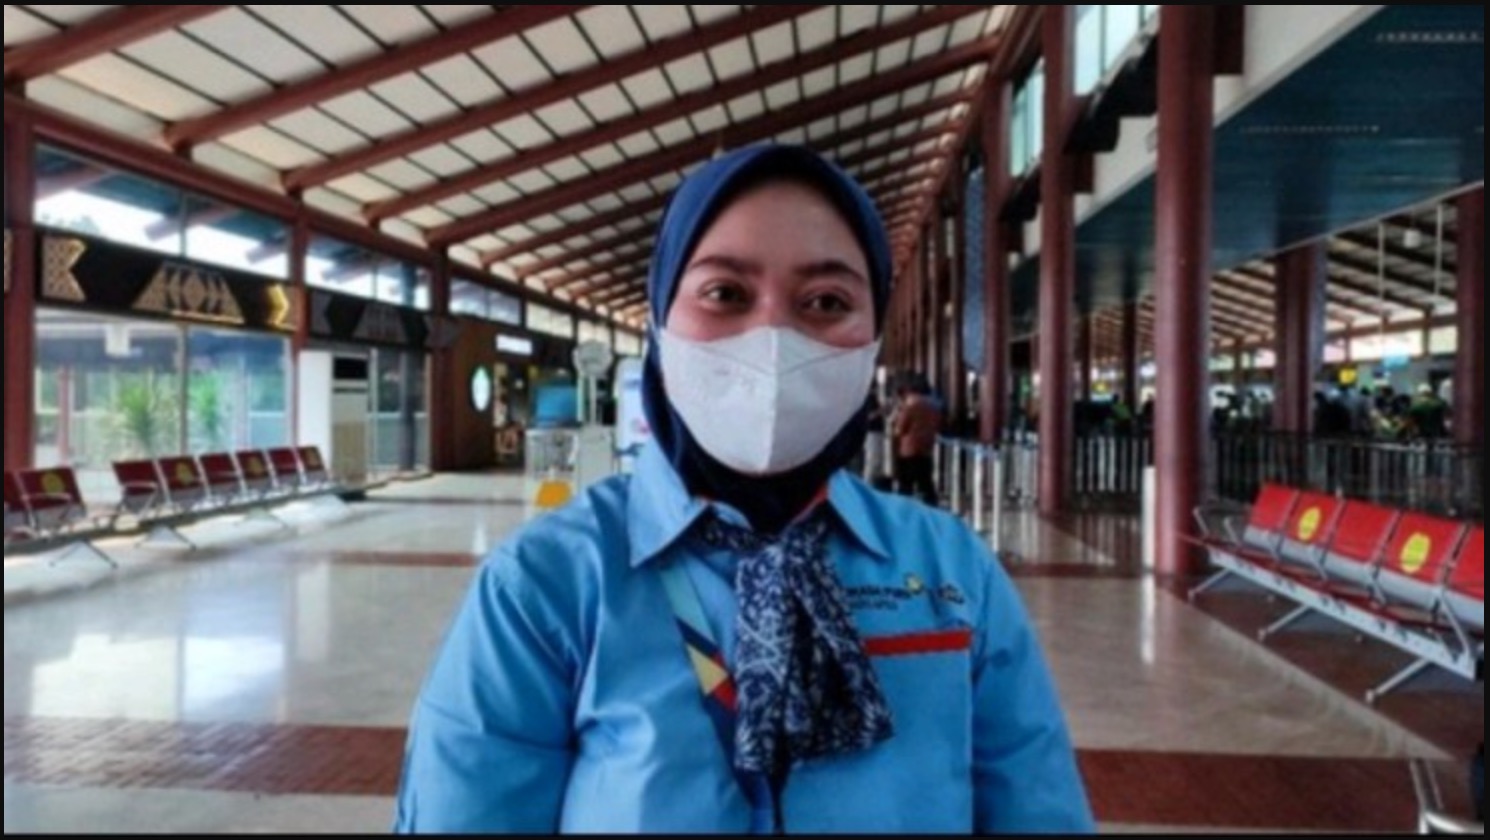 Jumpa Dompet Berisi Cek RM10.4 Juta Di Lapangan Terbang, Tindakan Wanita Ini Mendapat Ganjaran Besar - sajagempak.com